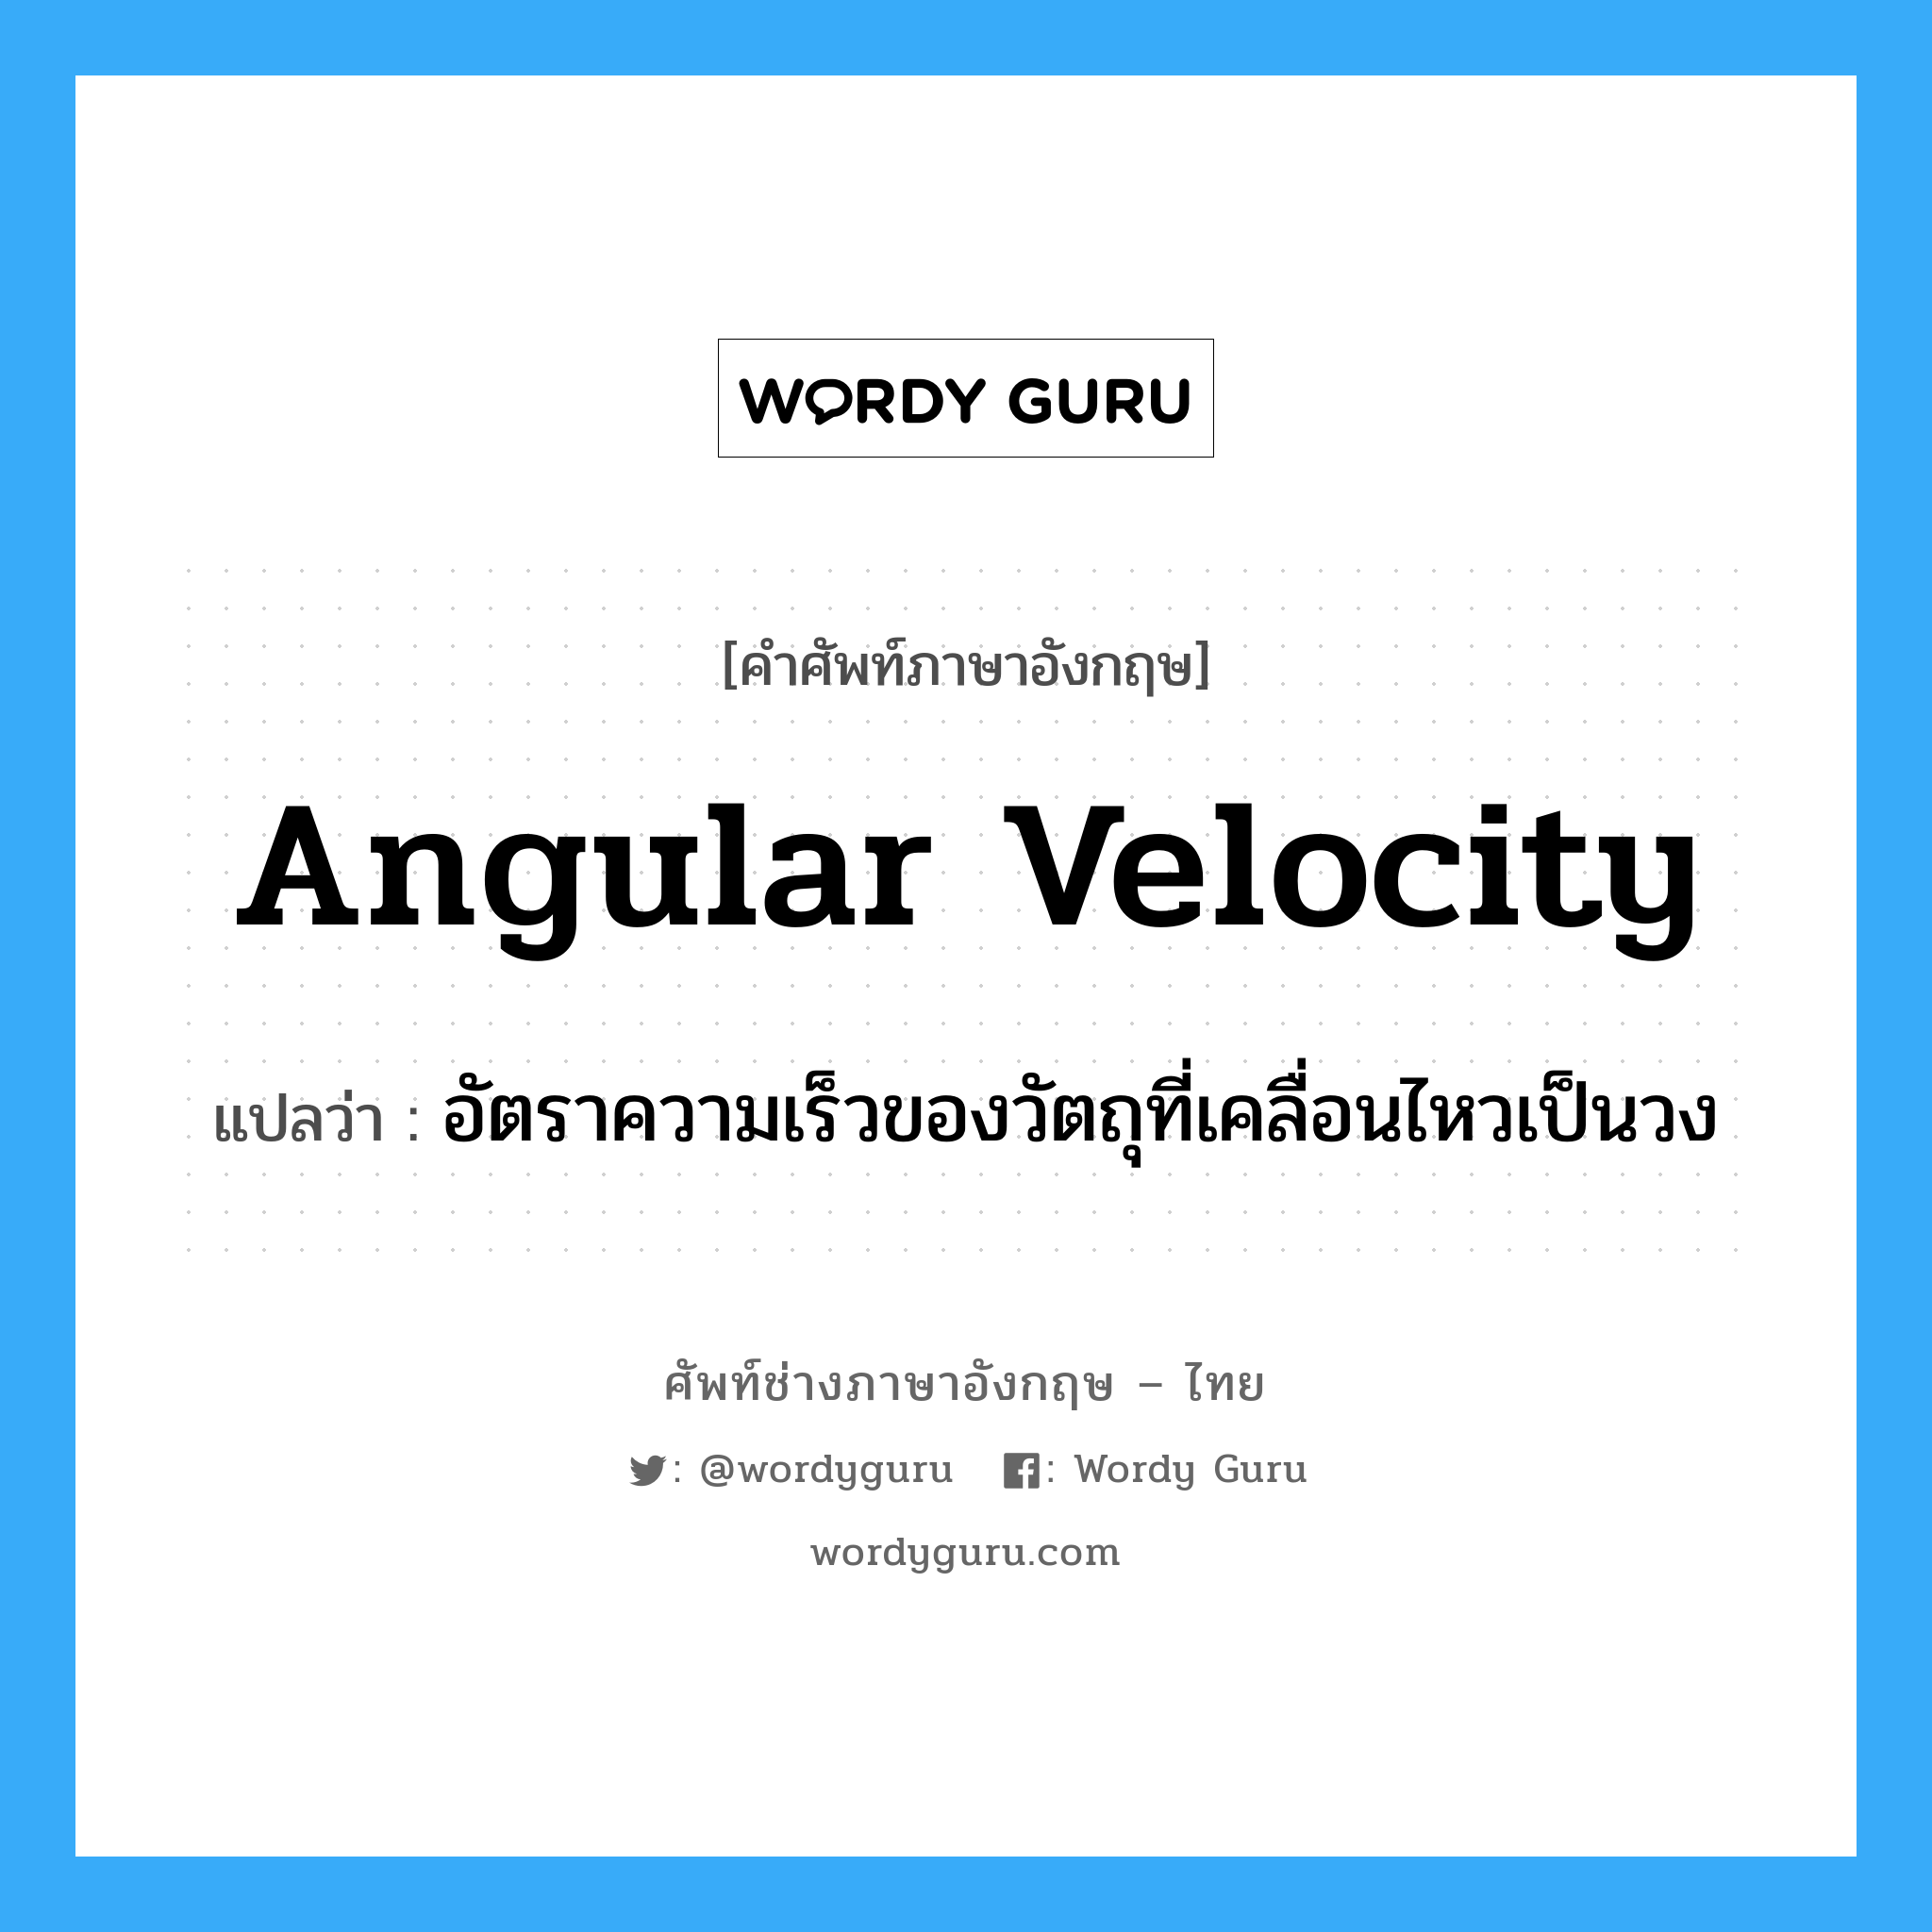 angular velocity แปลว่า?, คำศัพท์ช่างภาษาอังกฤษ - ไทย angular velocity คำศัพท์ภาษาอังกฤษ angular velocity แปลว่า อัตราความเร็วของวัตถุที่เคลื่อนไหวเป็นวง